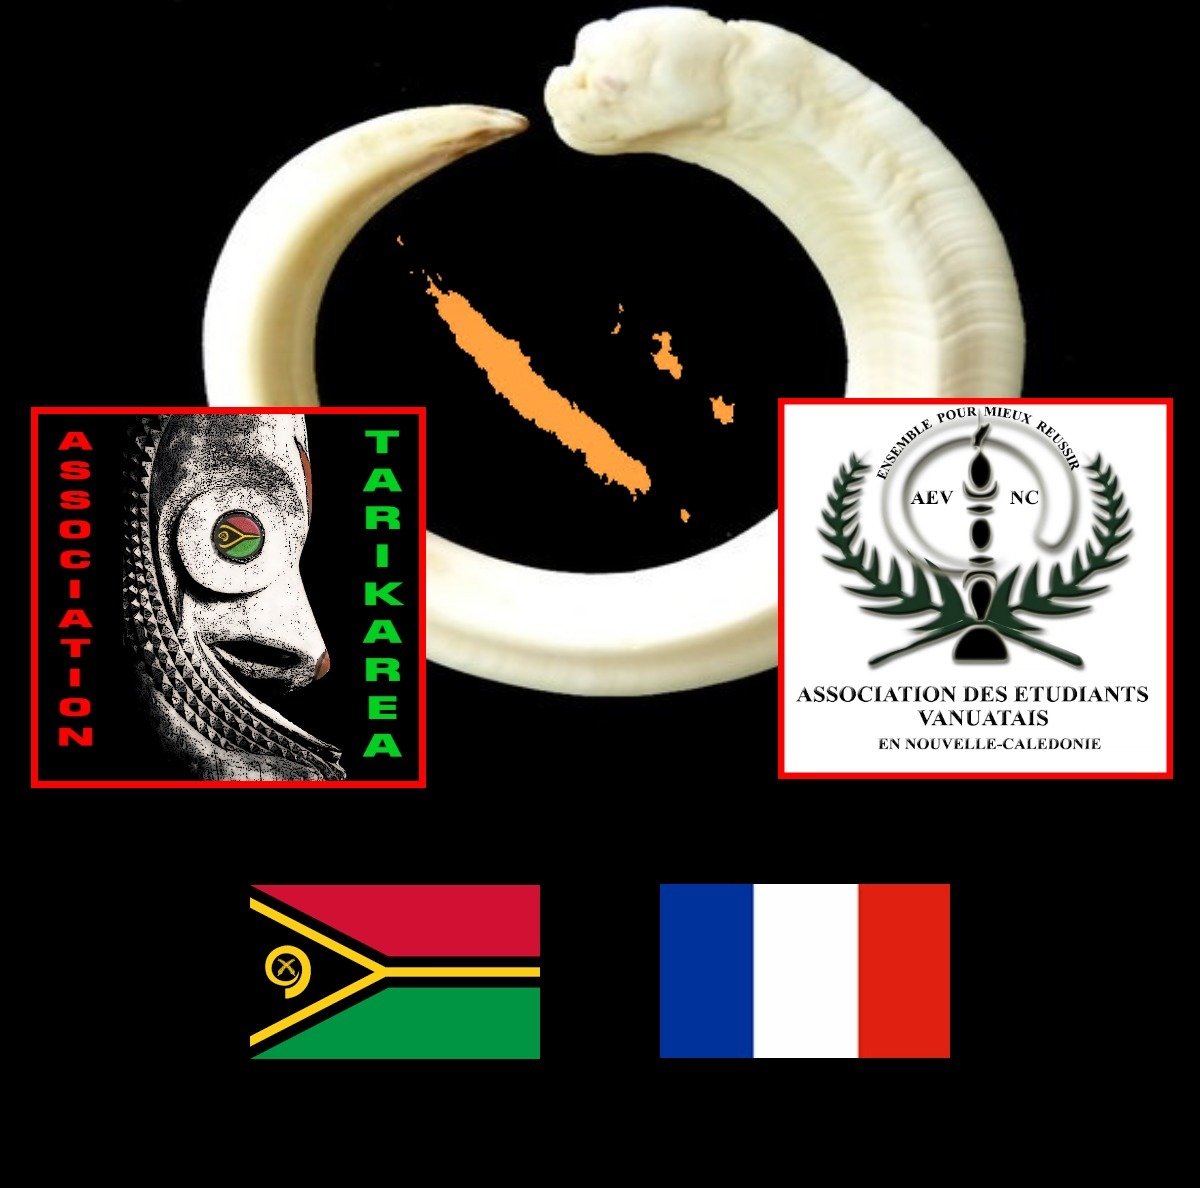 2020 - Nouvelle rencontre entre l'Association des Etudiants Vanuatais en Nouvelle-Calédonie (AEV-NC) et l'Association Tarikaréa (ATK) à Nouméa